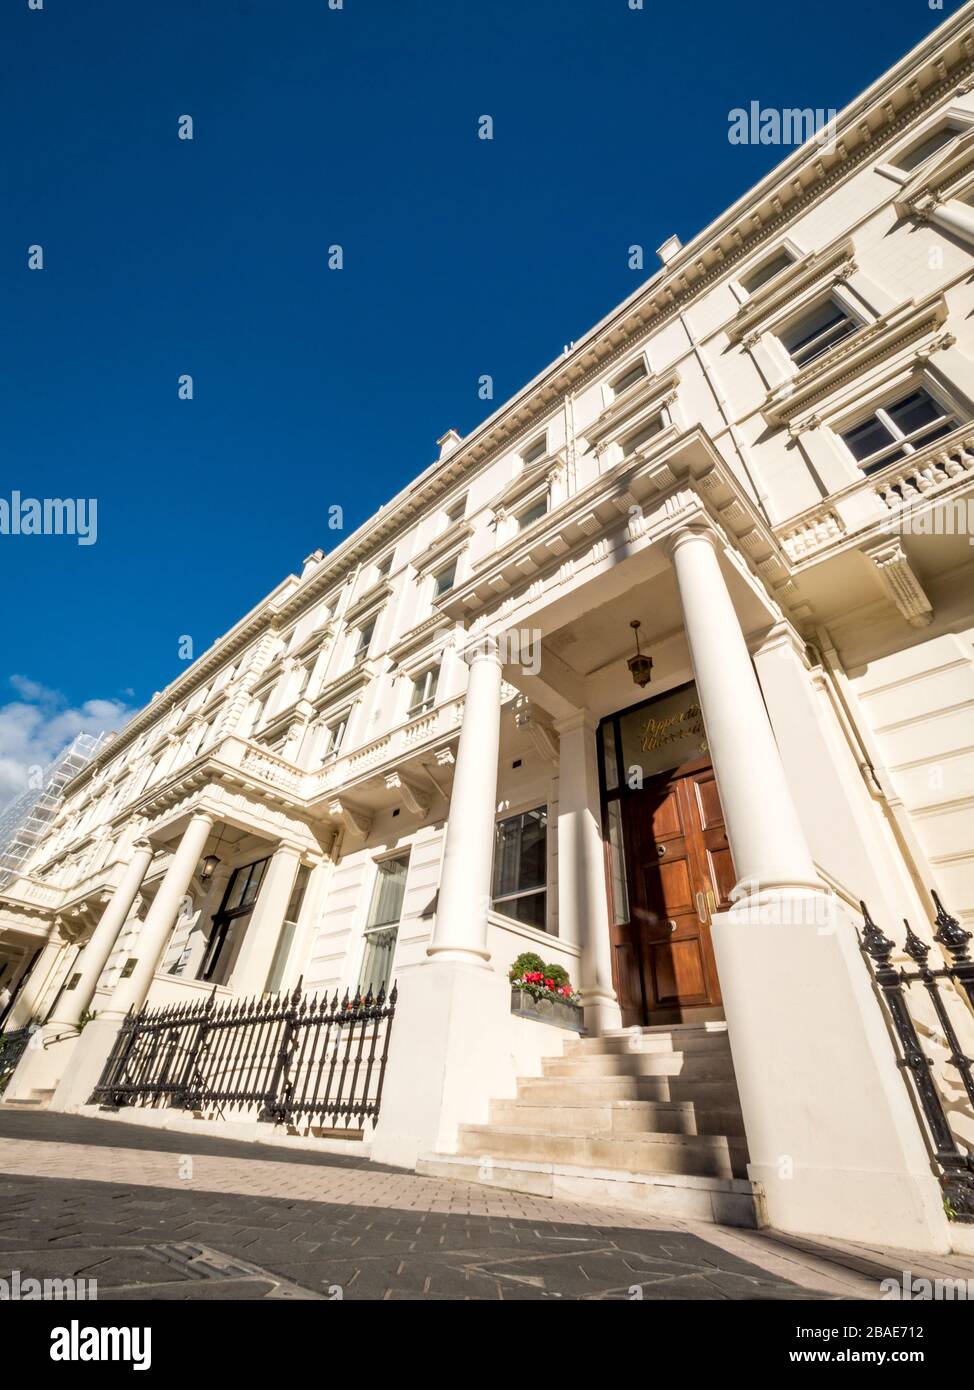 Georgische Architektur, Kensington, London. Ein niedriger, weiter Blick auf Reihenhäuser im wohlhabenden Stadtteil Kensington in West London. Stockfoto